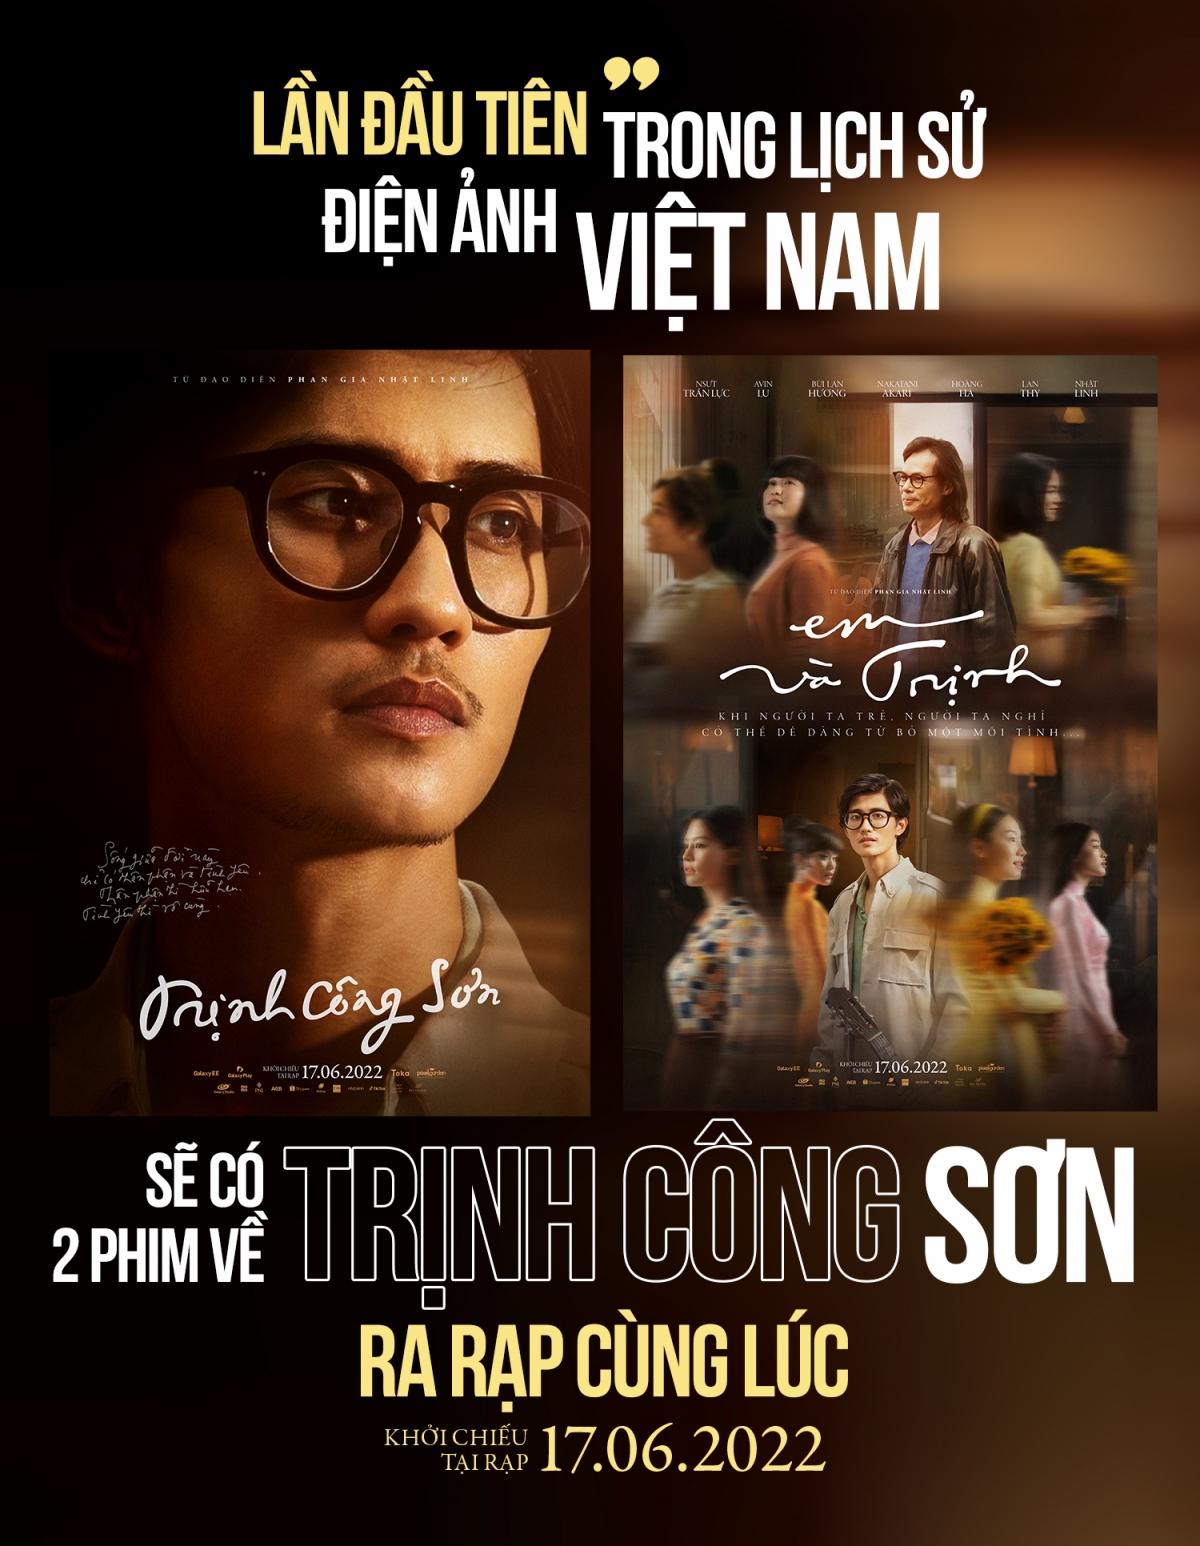 Ra mắt cùng lúc 2 phim điện ảnh về nhạc sĩ Trịnh Công Sơn - Ảnh 1.